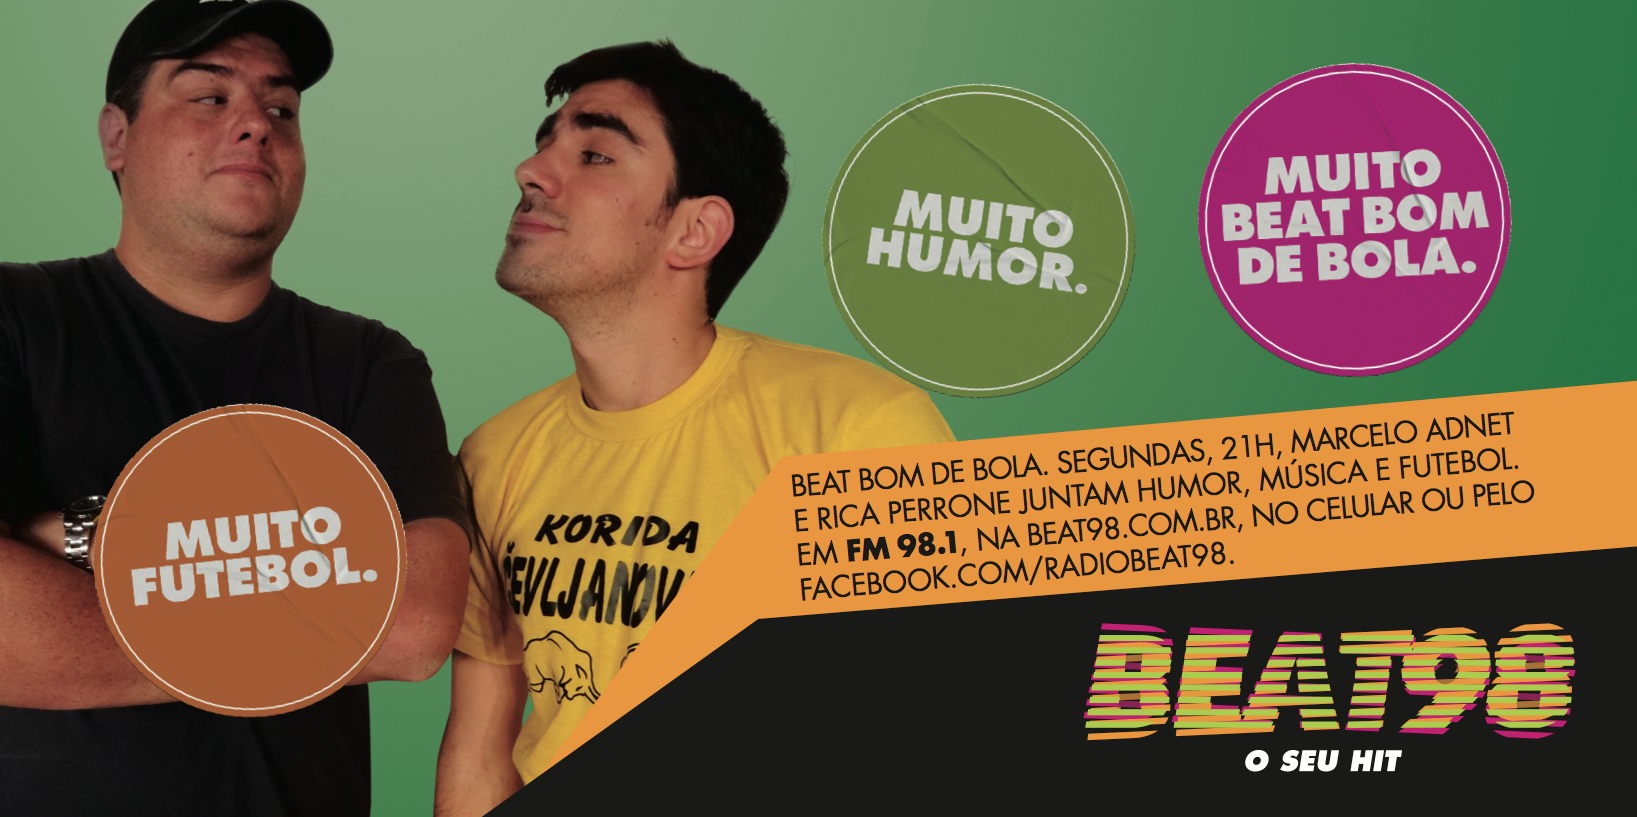 Beat Bom de Bola (25/11)